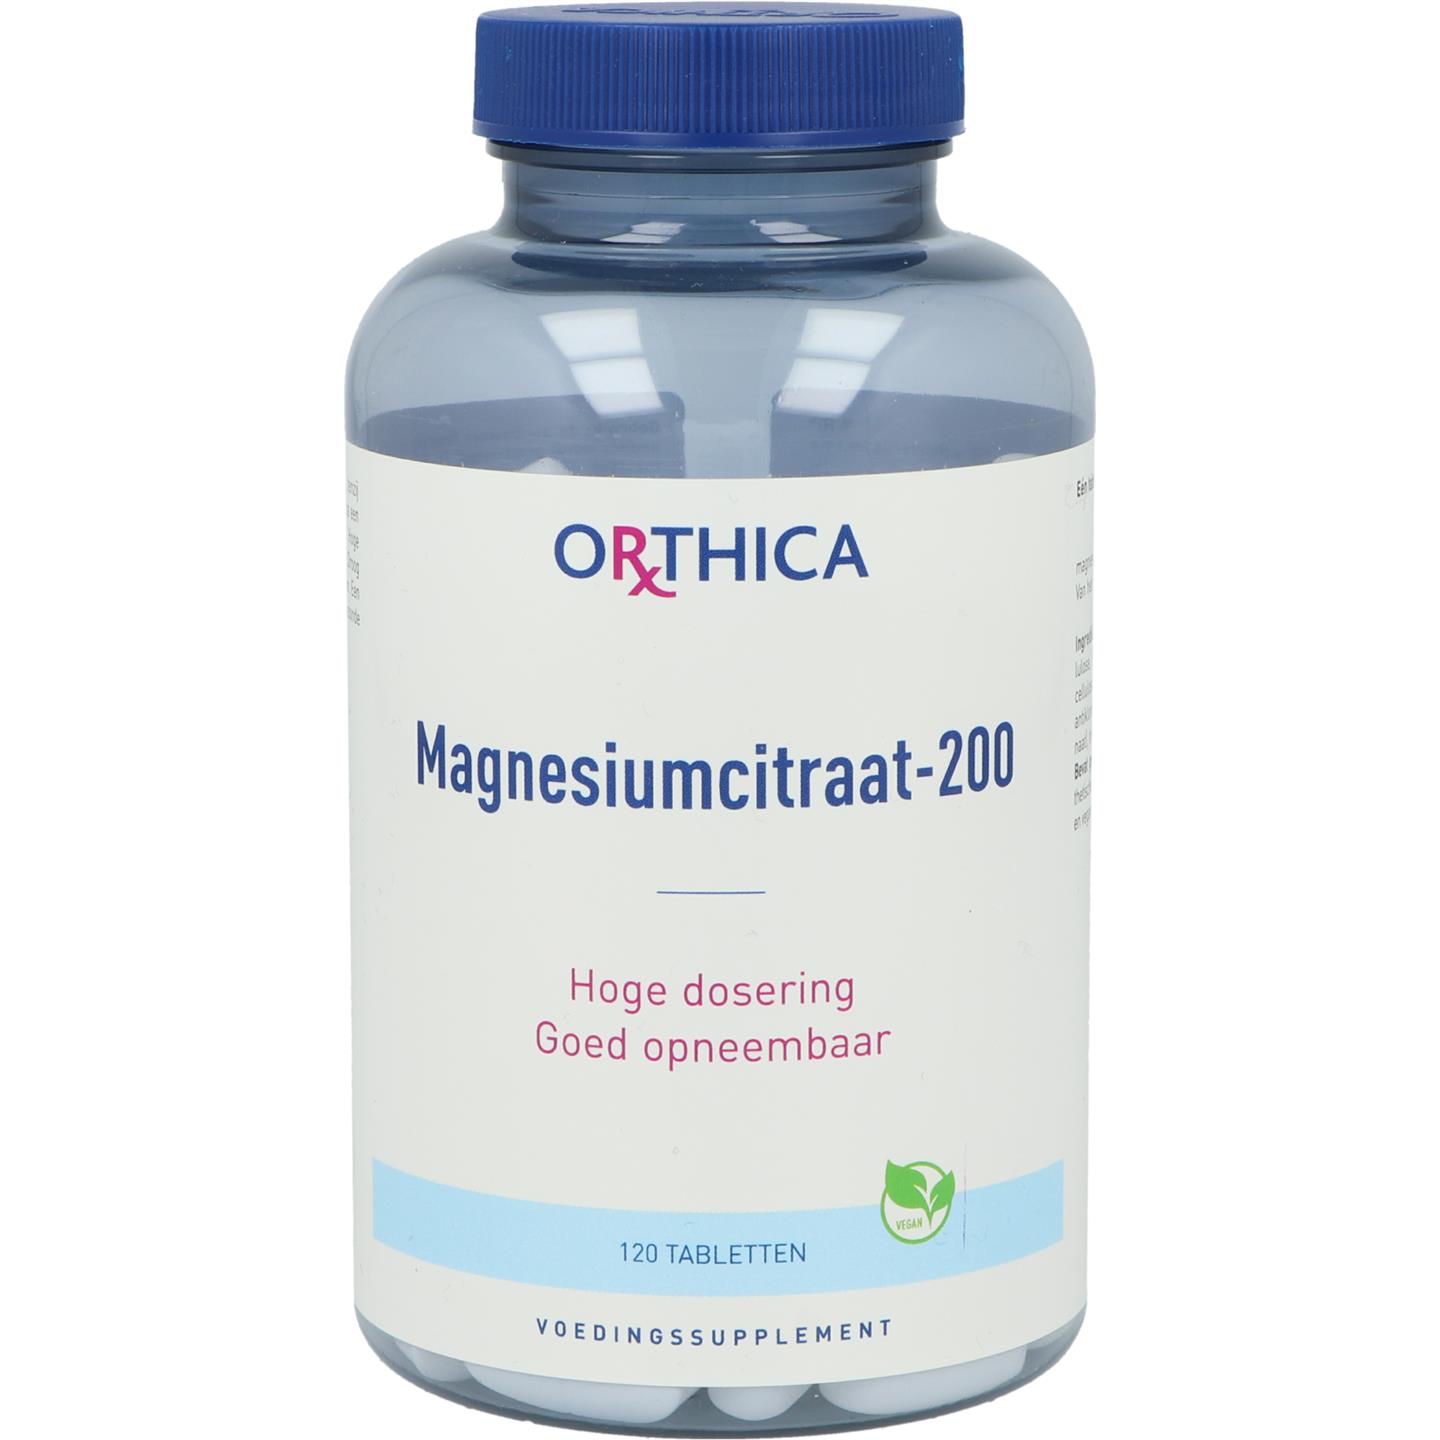 Magnesiumcitraat-200